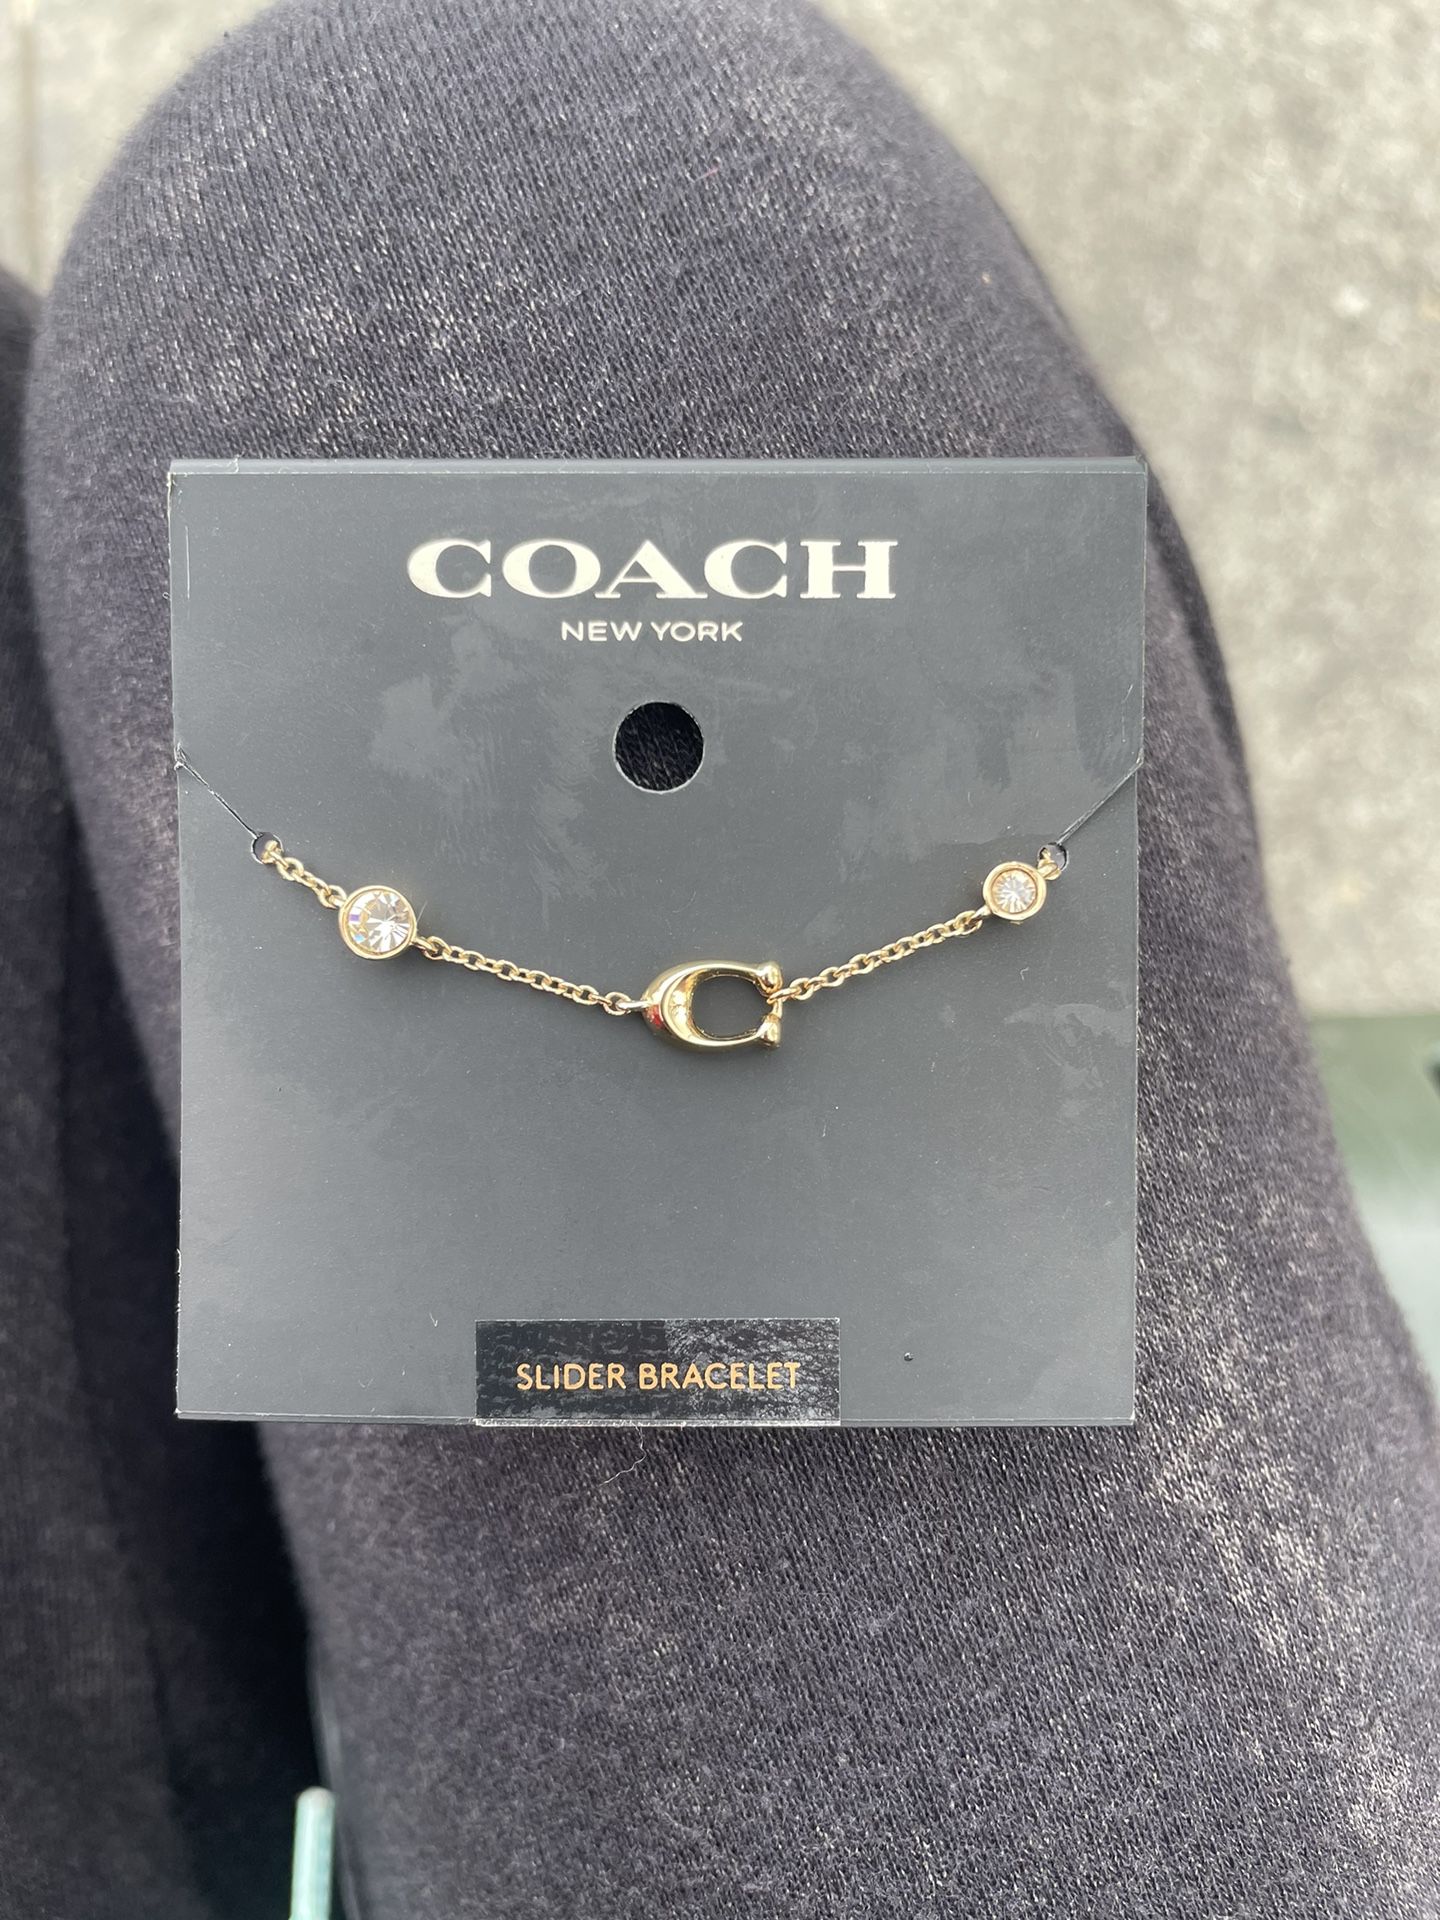 2 Brand New Coach Bracelets!!!